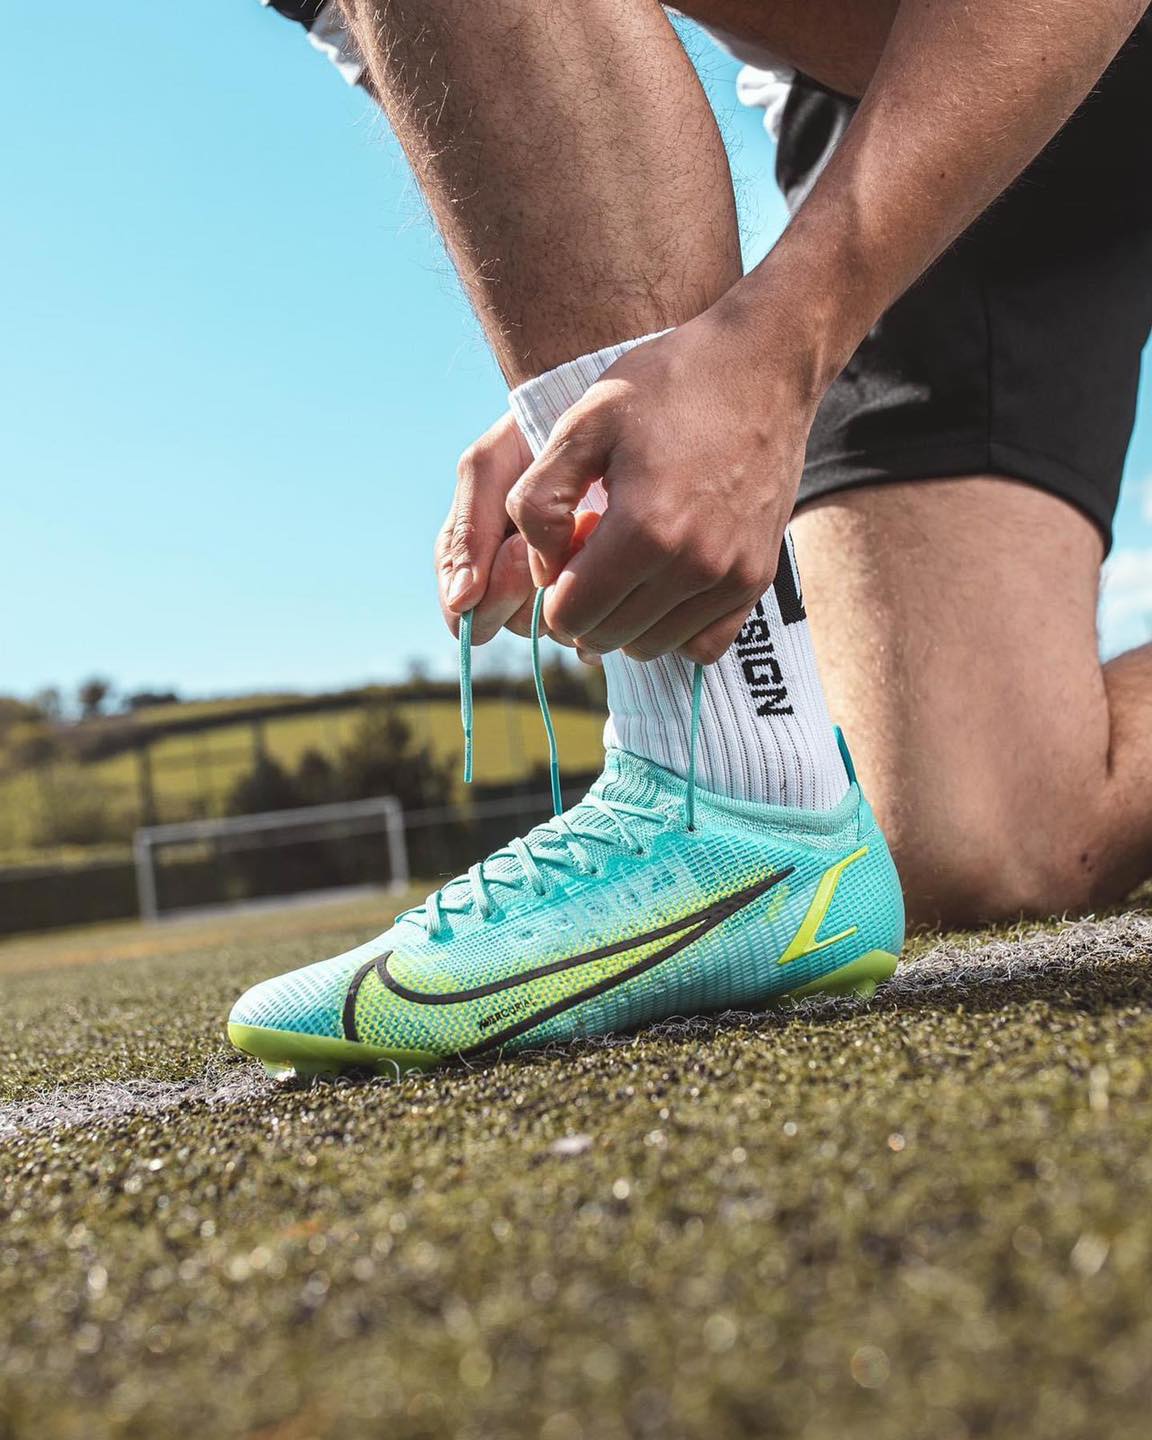 Tiền đạo Dembele mang giày đá bóng Nike Mercurial Vapor 14 Impulse